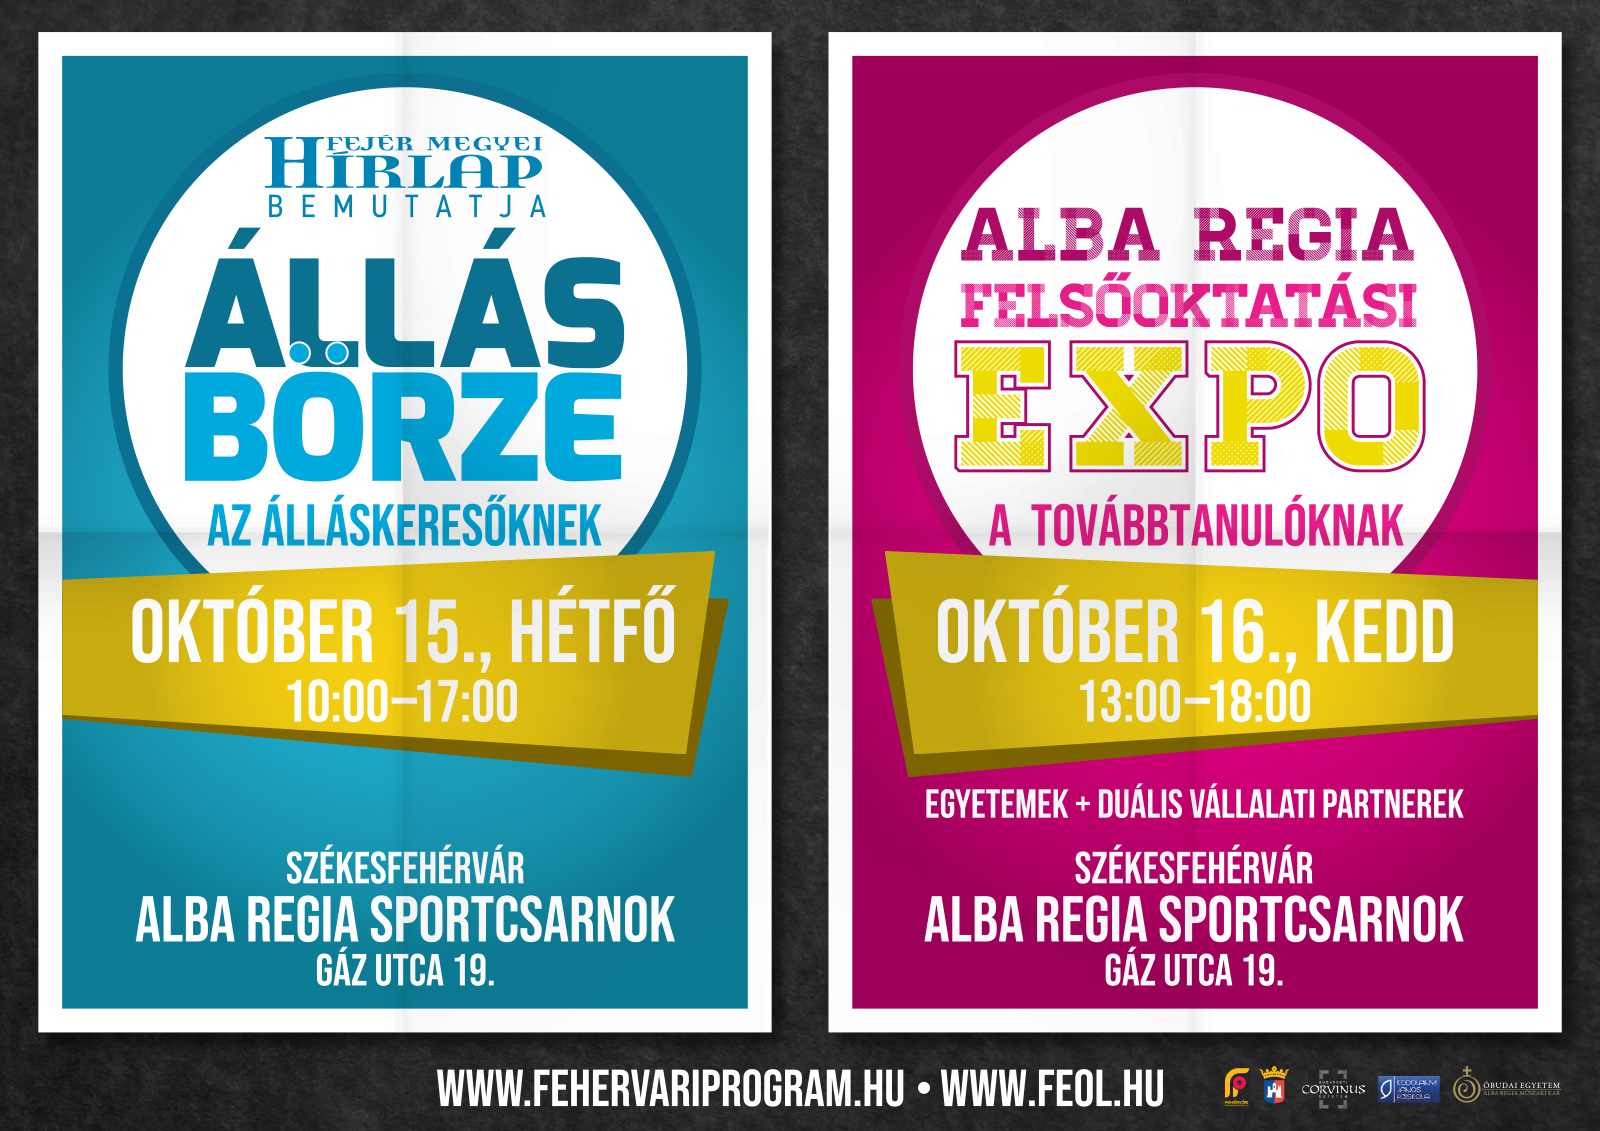 Jövő héten kedden lesz az Alba Regia Felsőoktatási Expo Székesfehérváron